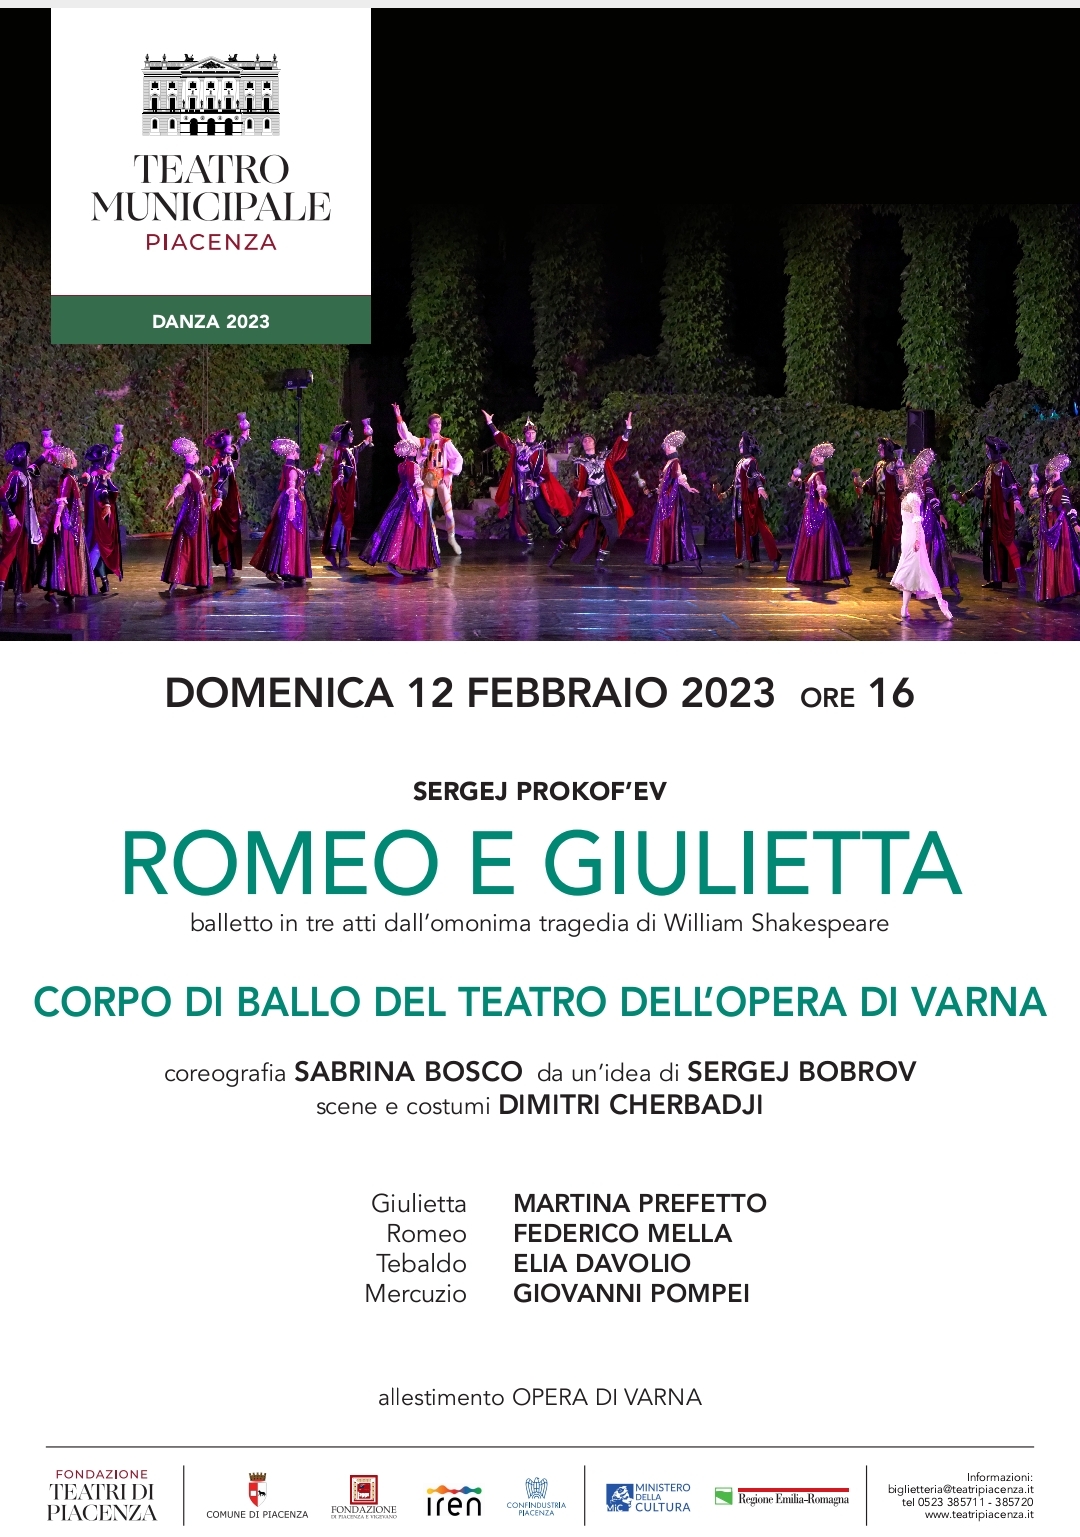 “ROMEO E GIULIETTA”, Teatro Municipale di Piacenza